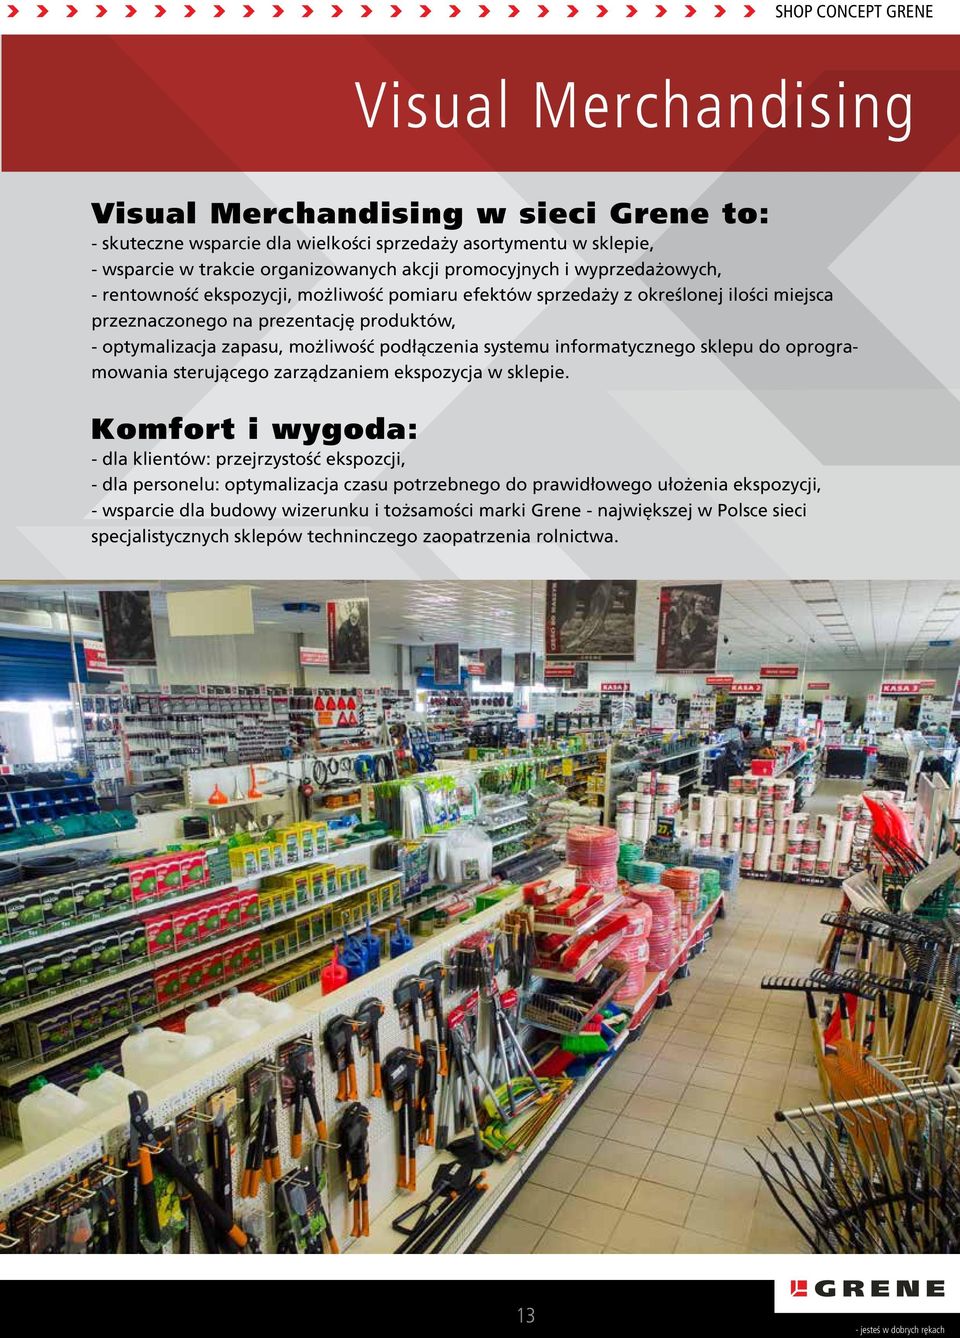 systemu informatycznego sklepu do oprogramowania sterującego zarządzaniem ekspozycja w sklepie.